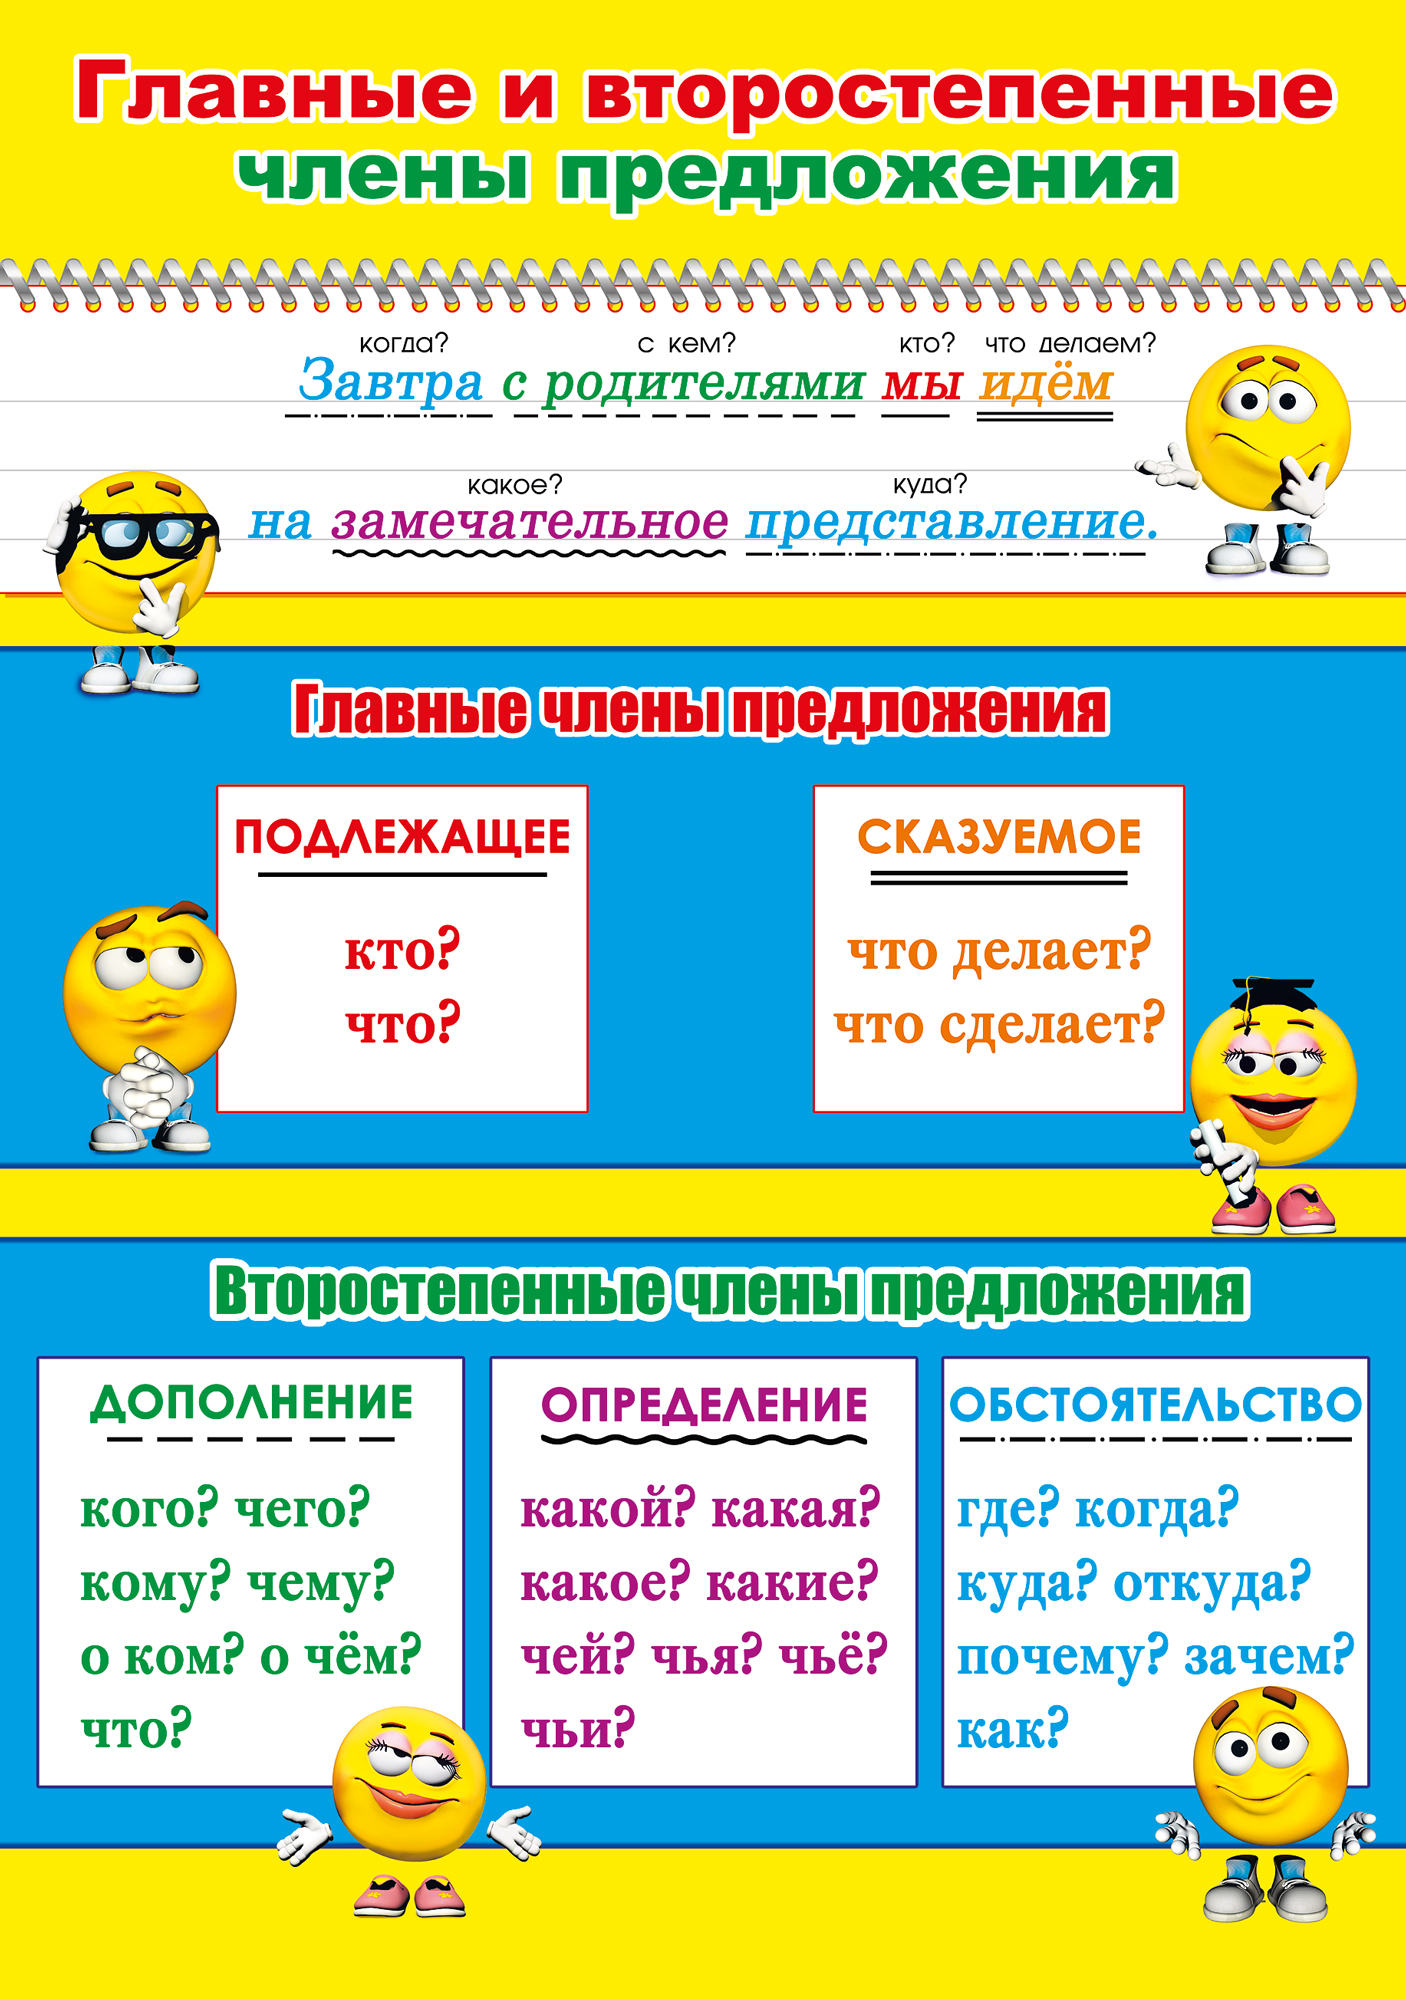 Конструкт по русскому языку 3 класс главные и второстепенные части предложения